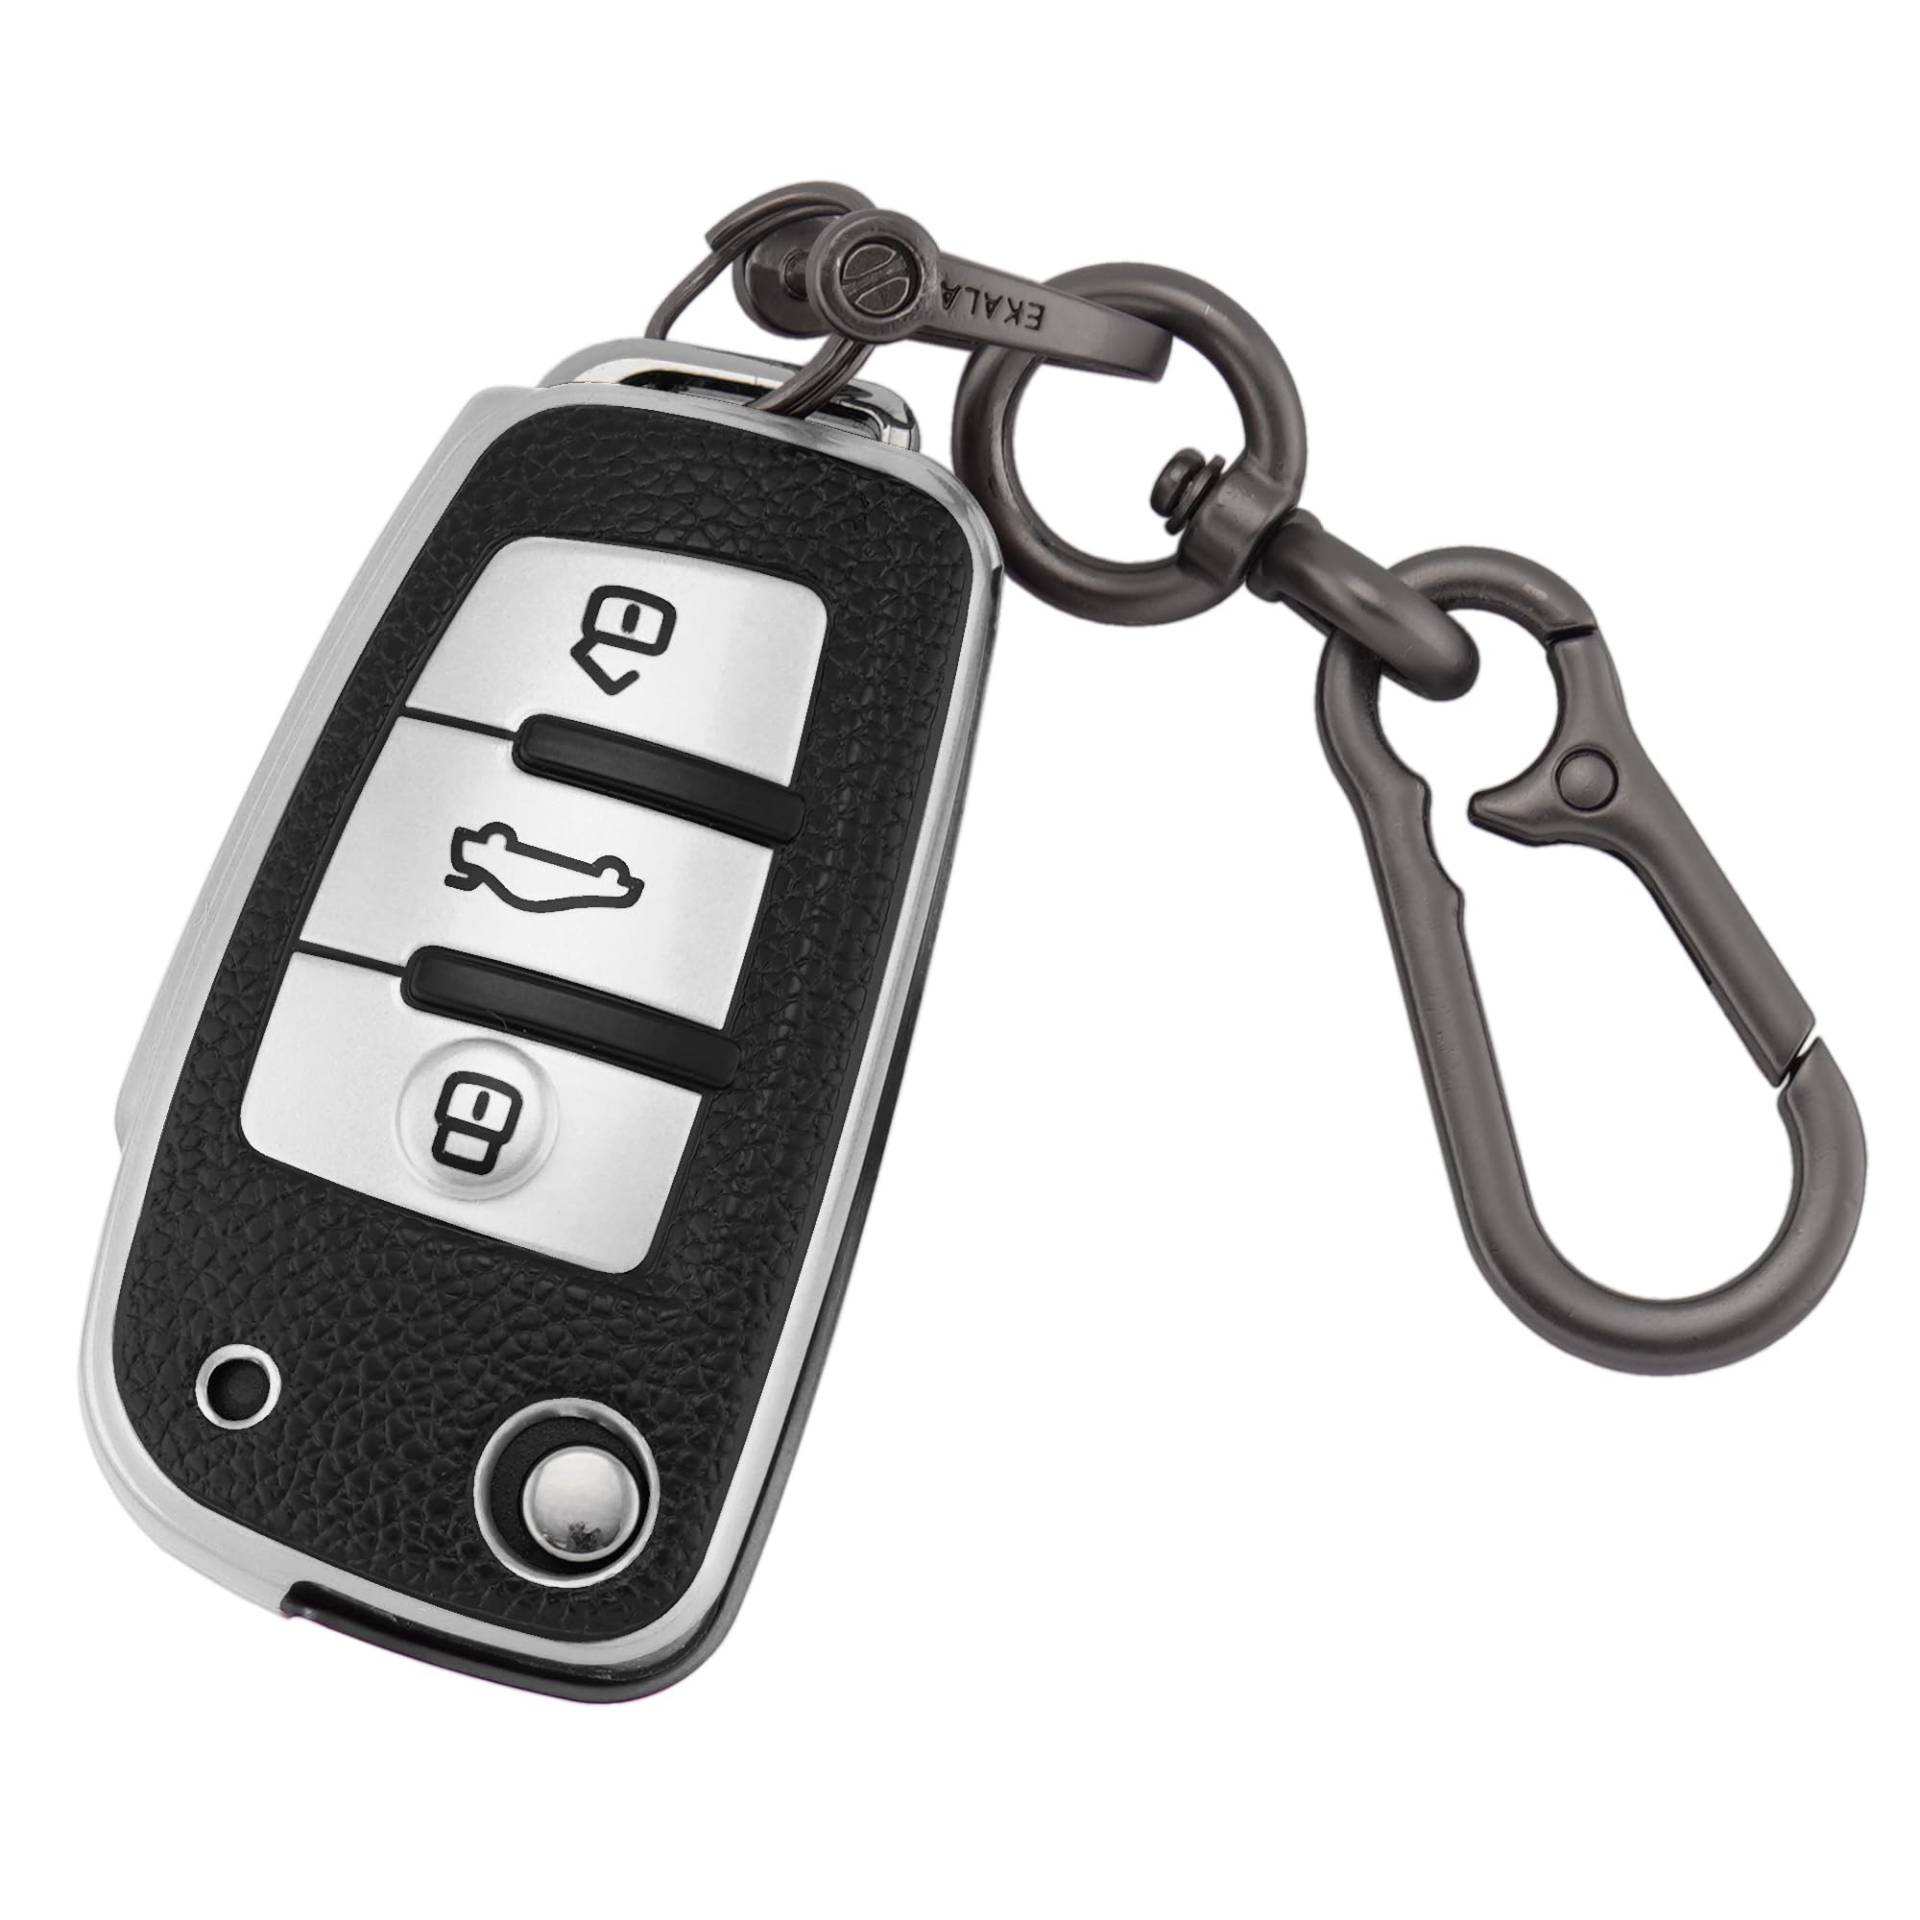 ERMWALR Autoschlüssel-Vollhülle für Audi mit Schlüsselanhänger, 3 Tasten, Schlüsselhülle aus Leder und TPU, passend für Audi A1, A3, A4, A6, A8, Q3, Q7, S3, S6, RS3, RS6, R8, TT, TTS (PW-Ad-3-S) von ERMWALR